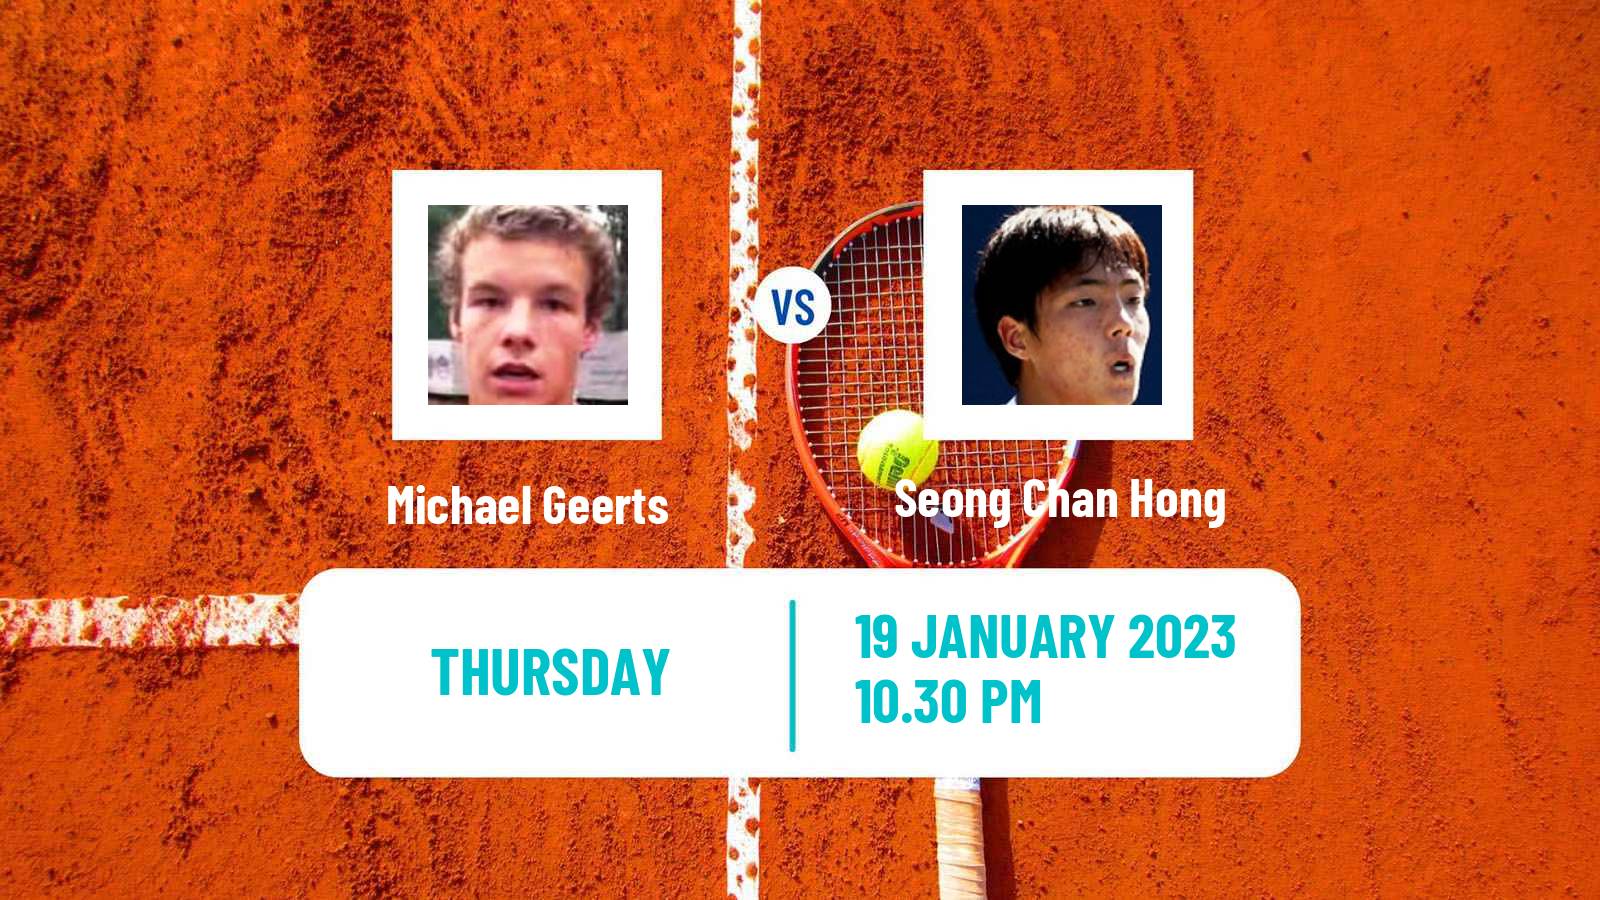 Tennis ATP Challenger Michael Geerts - Seong Chan Hong